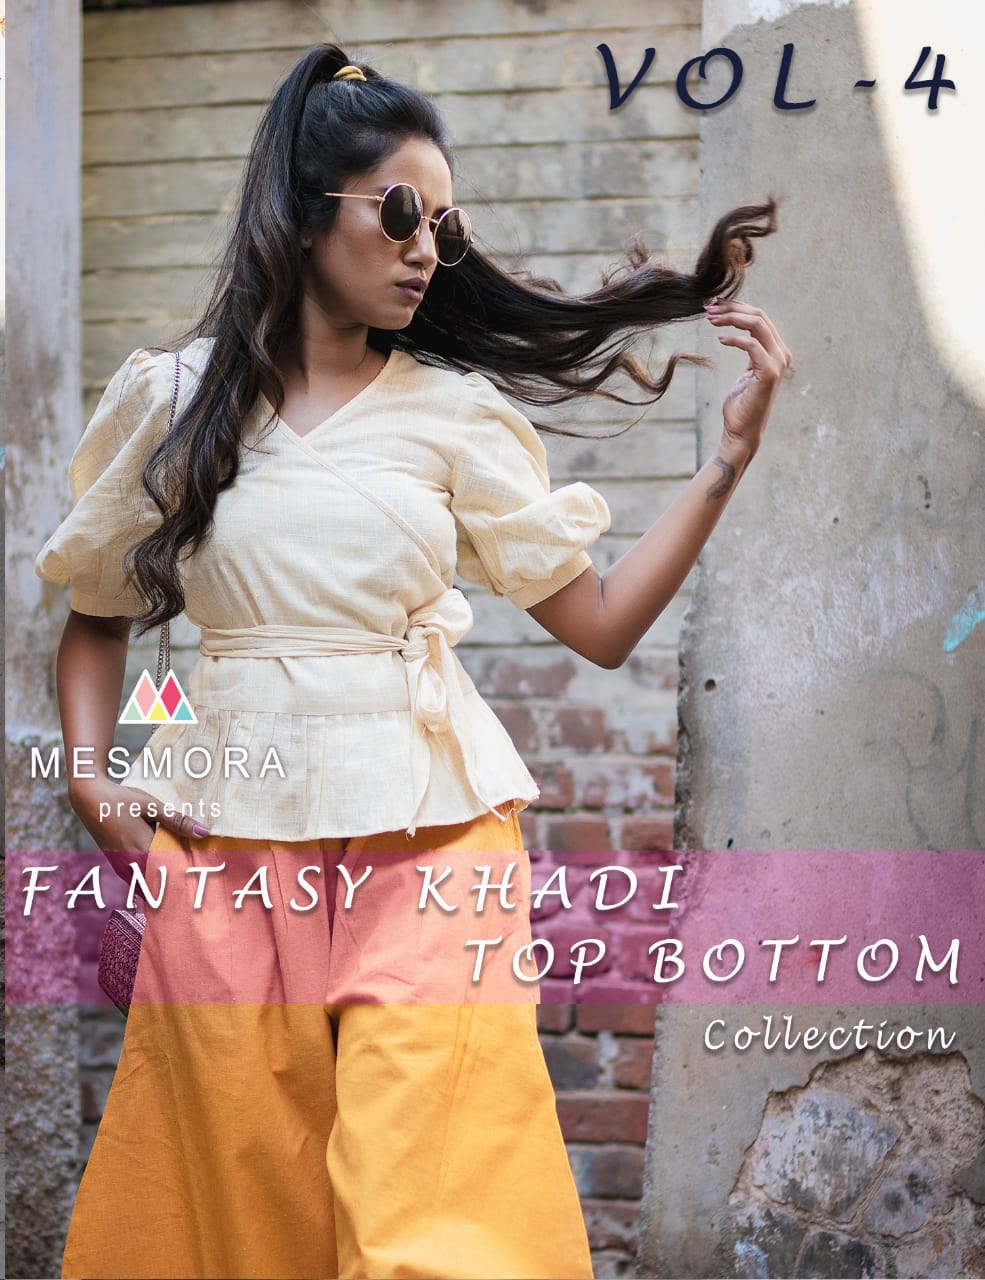 mesmora fantasy khadi top bottom collection  vol 4 fancy tops catalog at reasonable rate